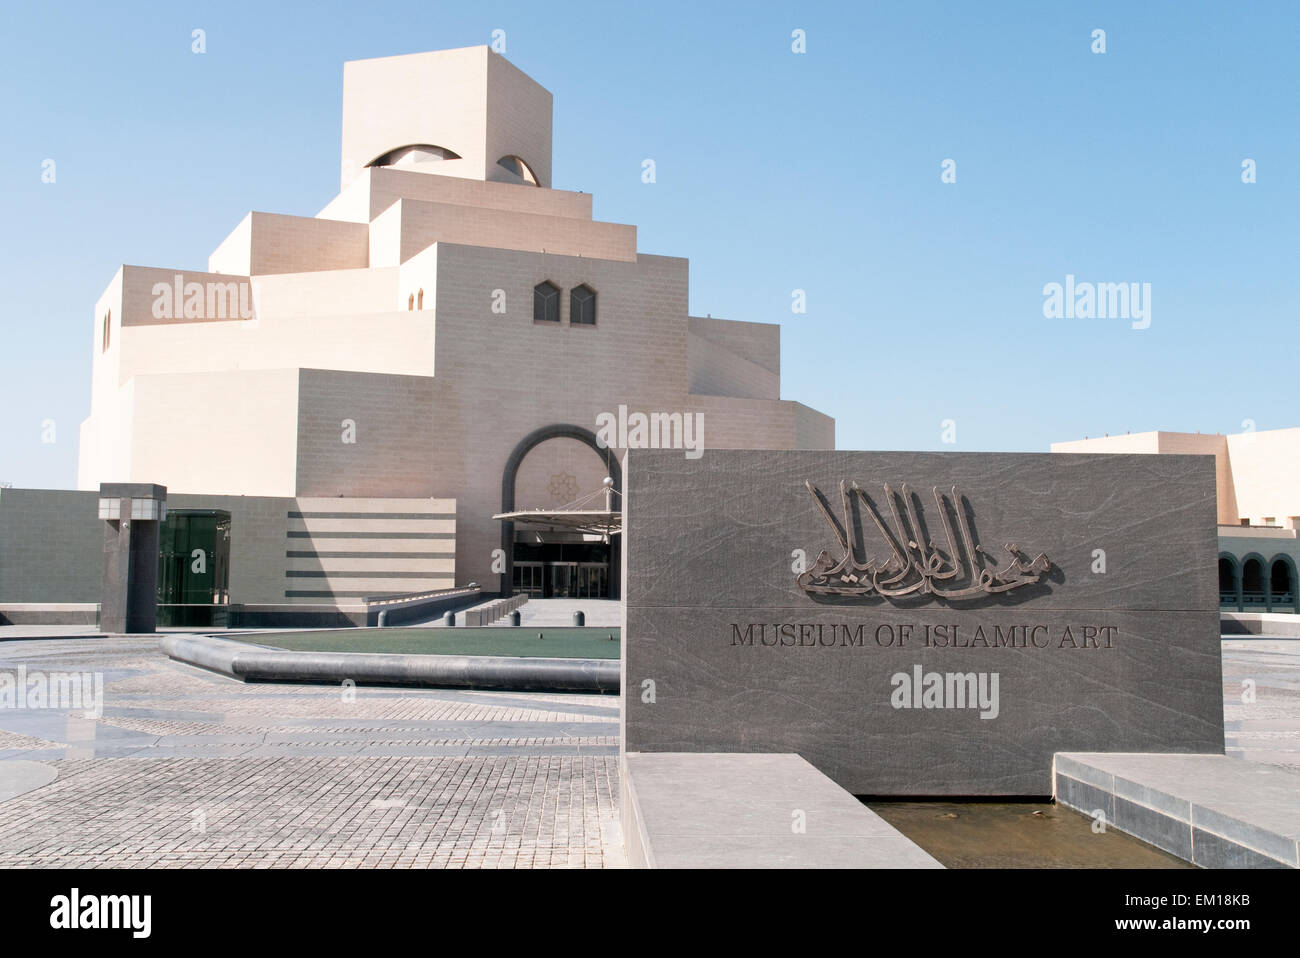 La entrada al Museo de Arte Islámico en Doha, Qatar, diseñada por el arquitecto Ieoh Ming Pei. Foto de stock